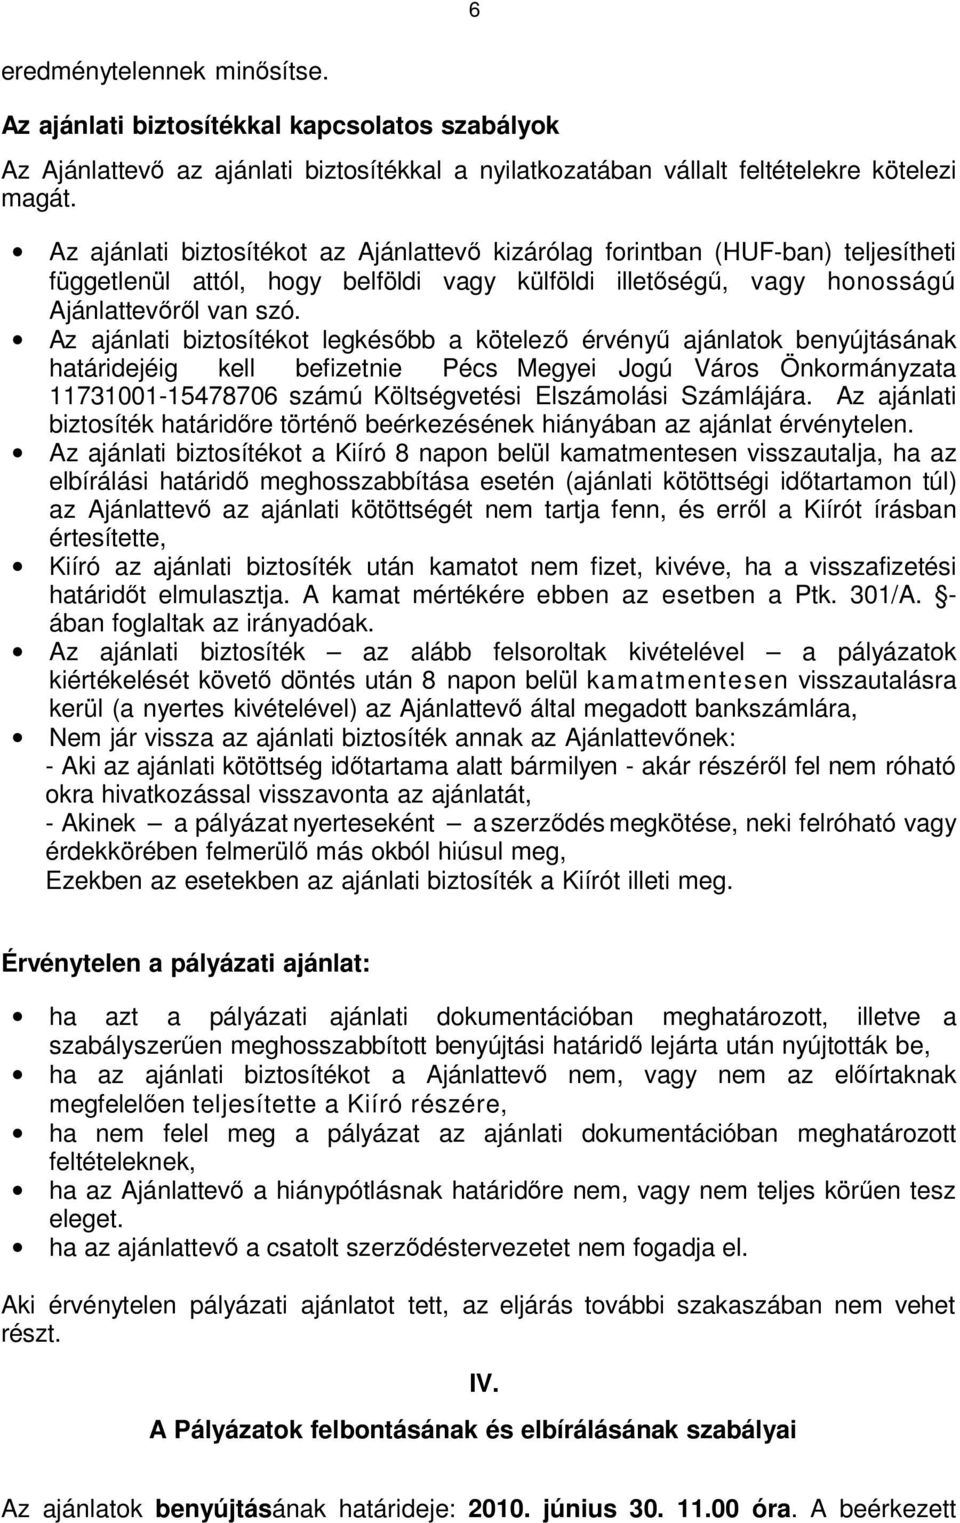 Az ajánlati biztosítékot legkésőbb a kötelező érvényű ajánlatok benyújtásának határidejéig kell befizetnie Pécs Megyei Jogú Város Önkormányzata 11731001-15478706 számú Költségvetési Elszámolási